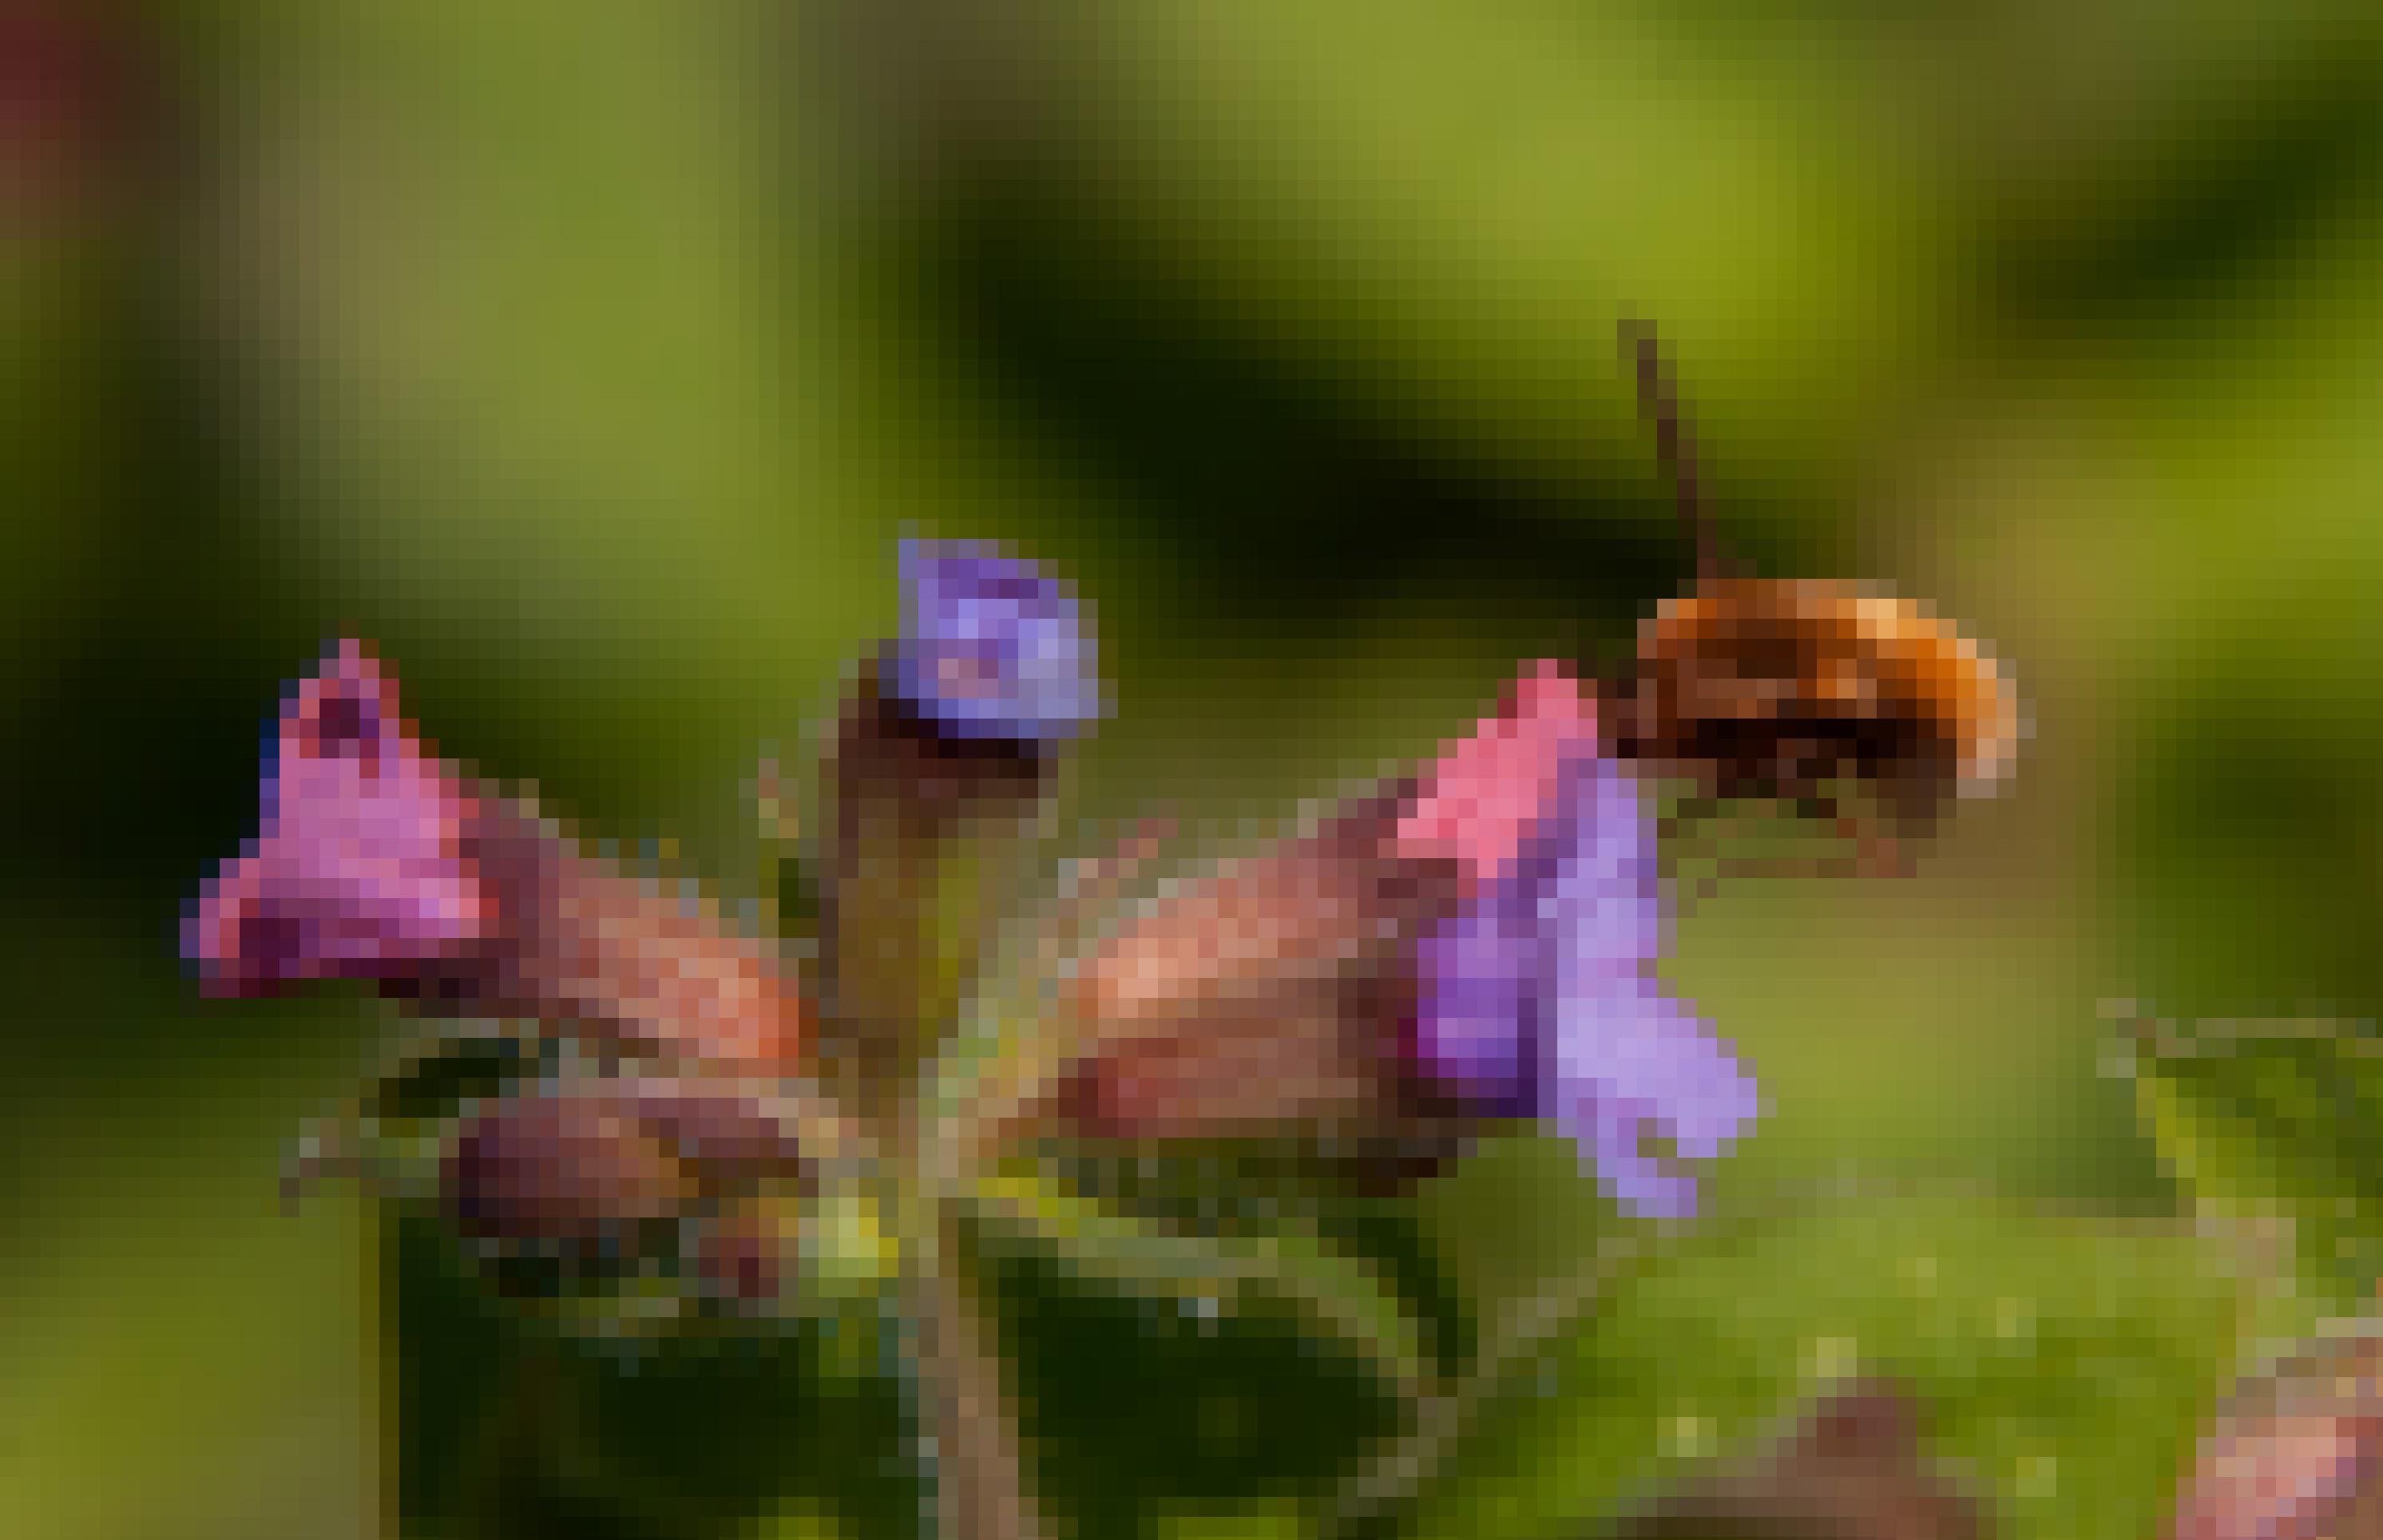 Ein beigebraunes Insekt schwebt vor einer rosa-violetten Blüte. Die Flügel sind kaum zu sehen, so schnell bewegt es sie. Der Rüssel steckt in der Blume.